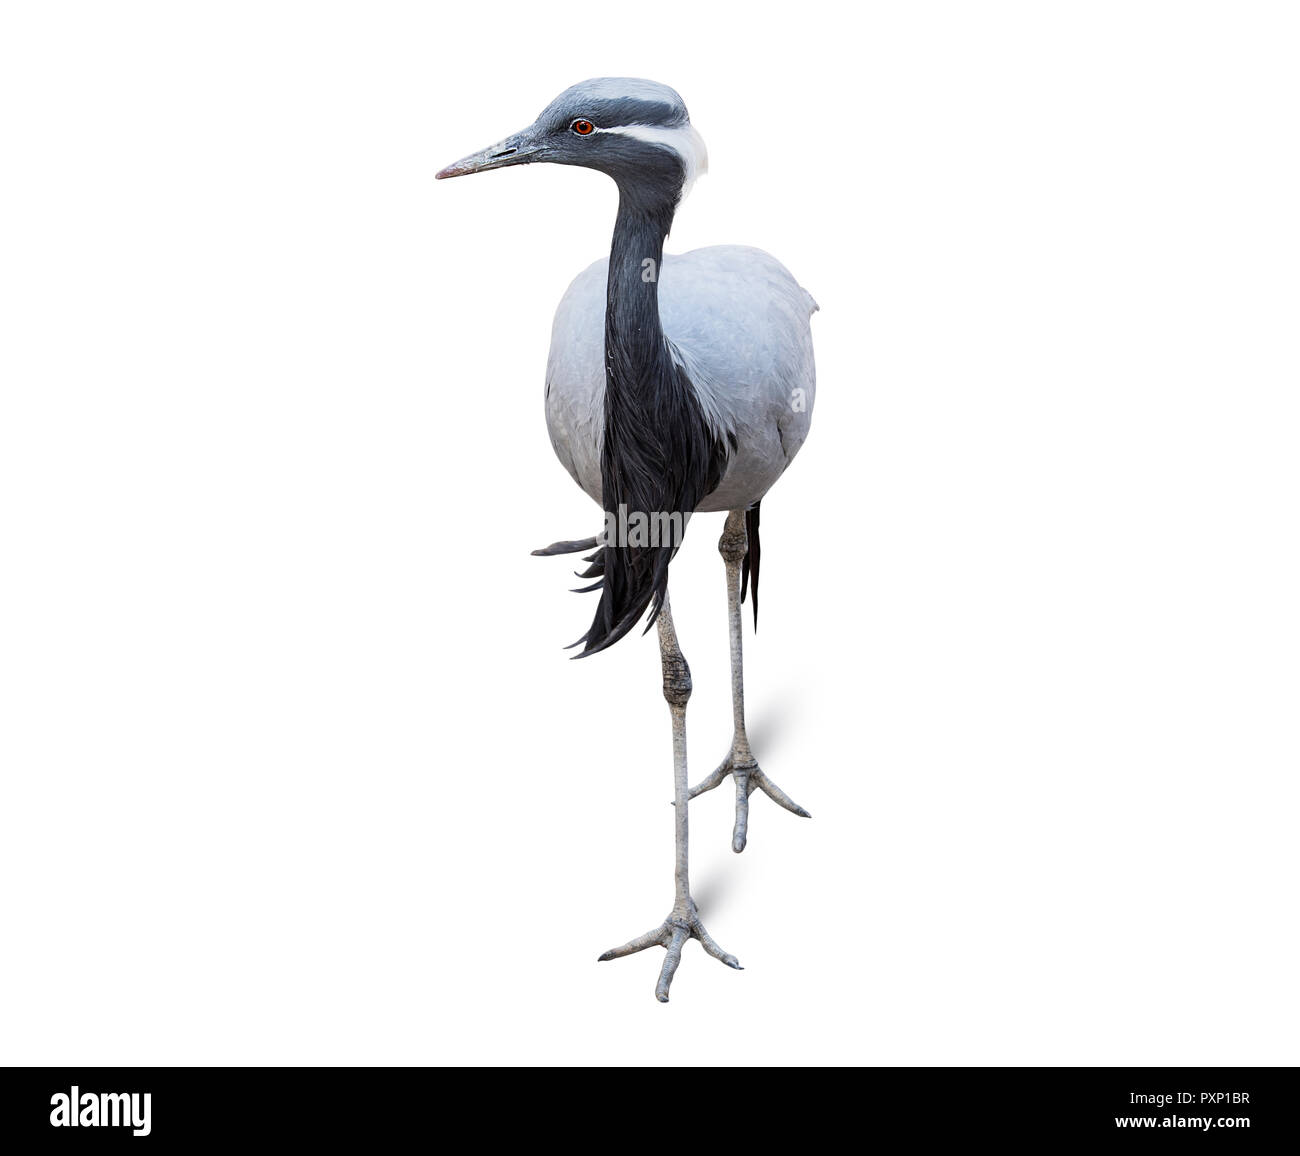 Heron isoliert auf weißem Hintergrund, einen grossen Fisch-Essen waten Vogel mit langen Beinen, einem langen S-förmige Hals und einem langen spitzen Bill Stockfoto